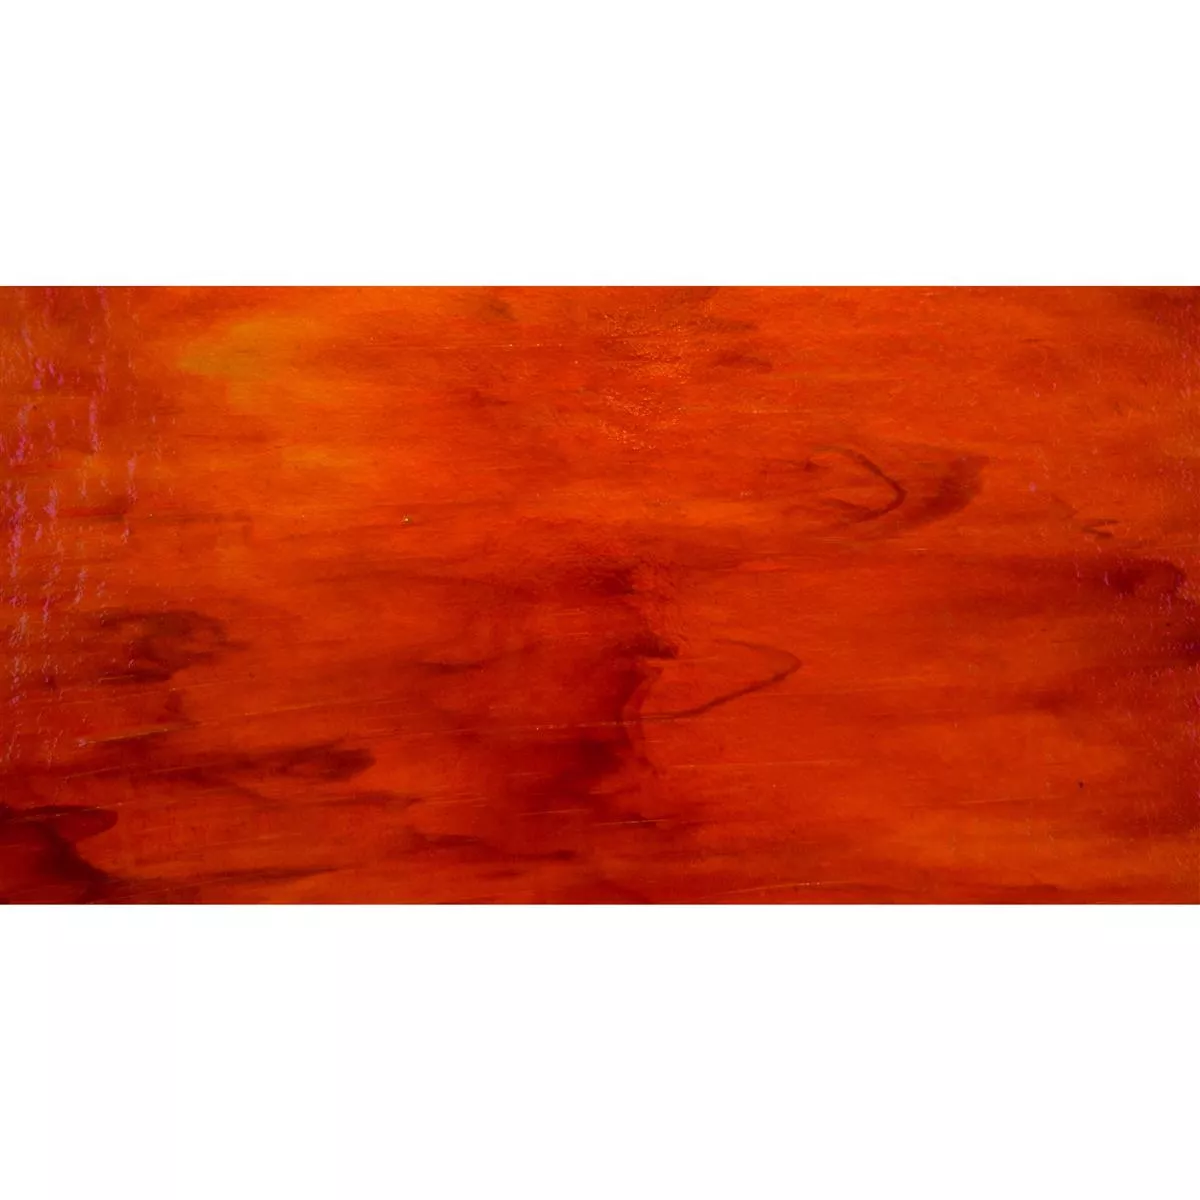 Staklo Zidne Pločice Trend-Vi Supreme Outback Red 30x60cm